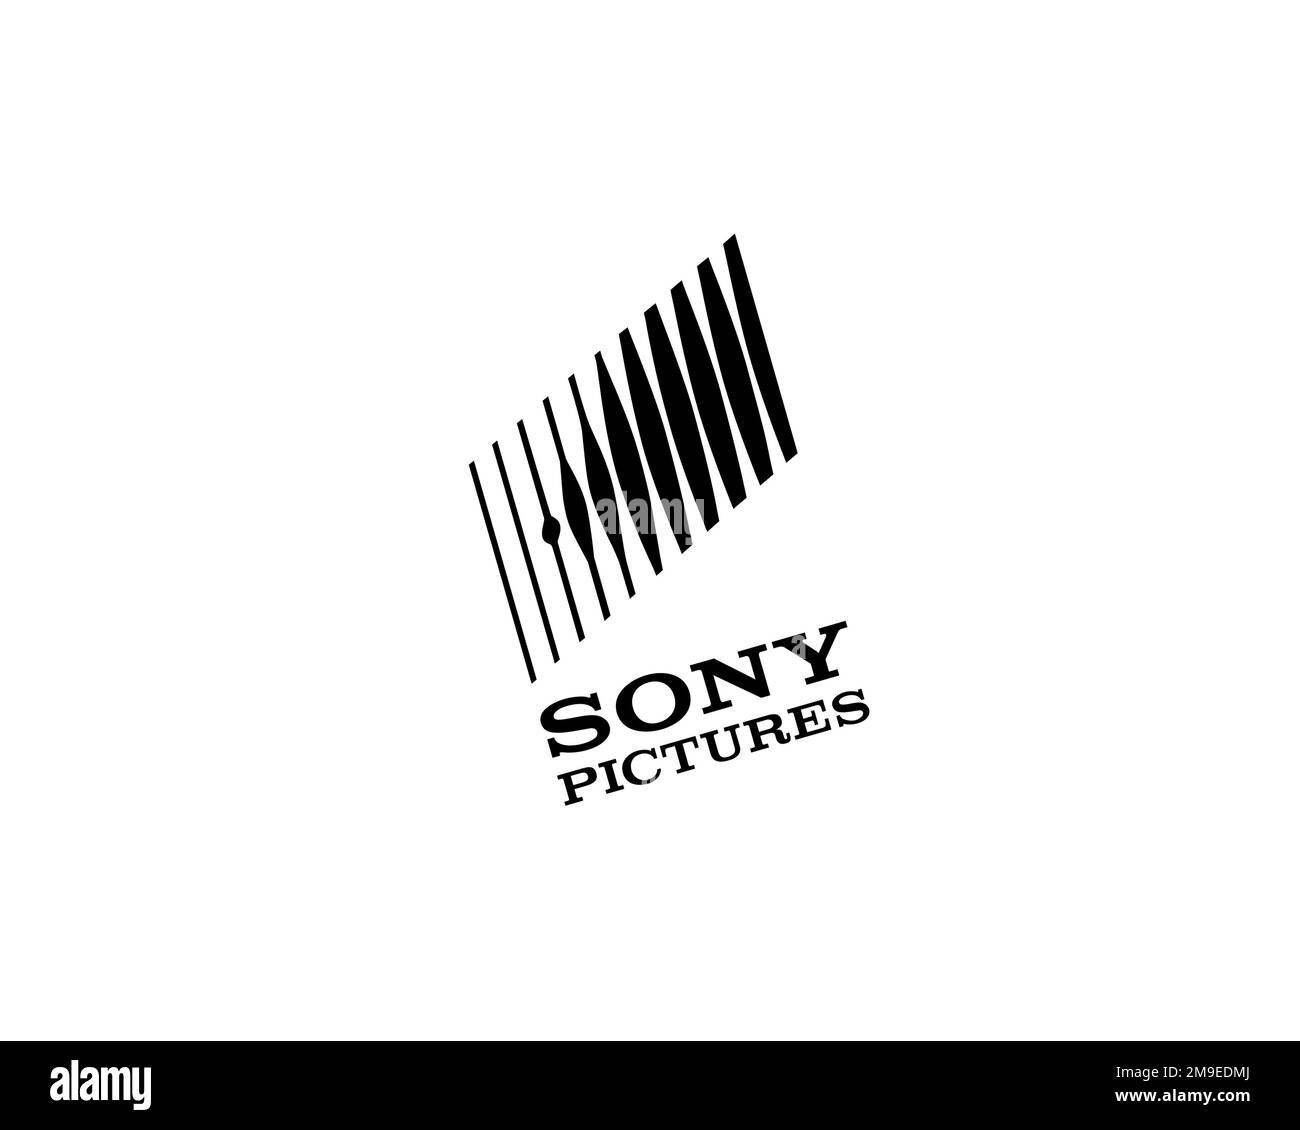 Sony Pictures, logo pivoté, arrière-plan blanc Banque D'Images